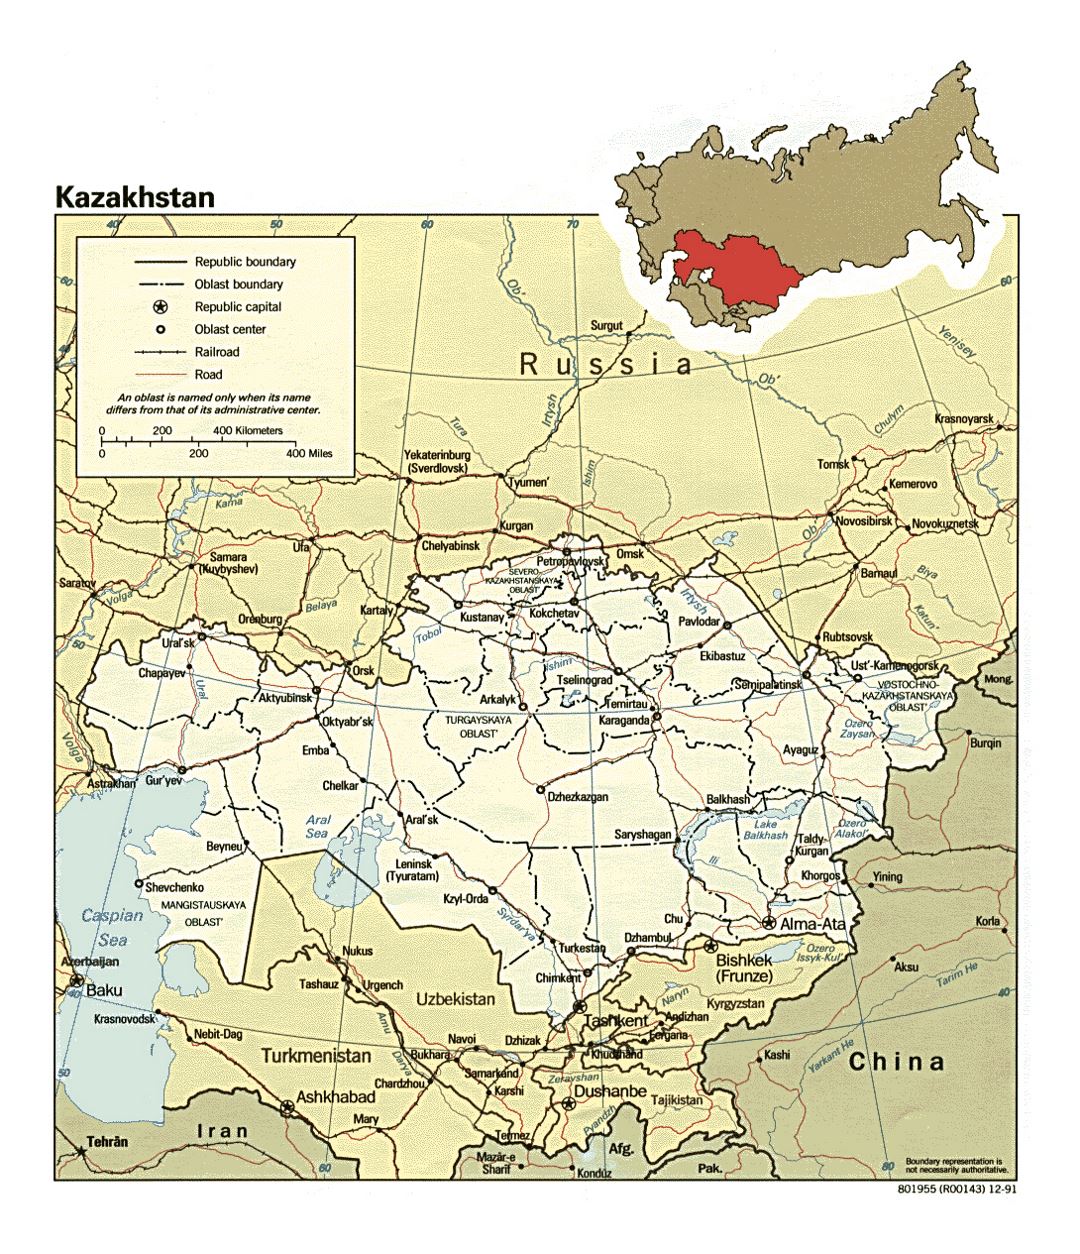 Detallado mapa político y administrativo de Kazajstán con carreteras, ferrocarriles y ciudades - 1991